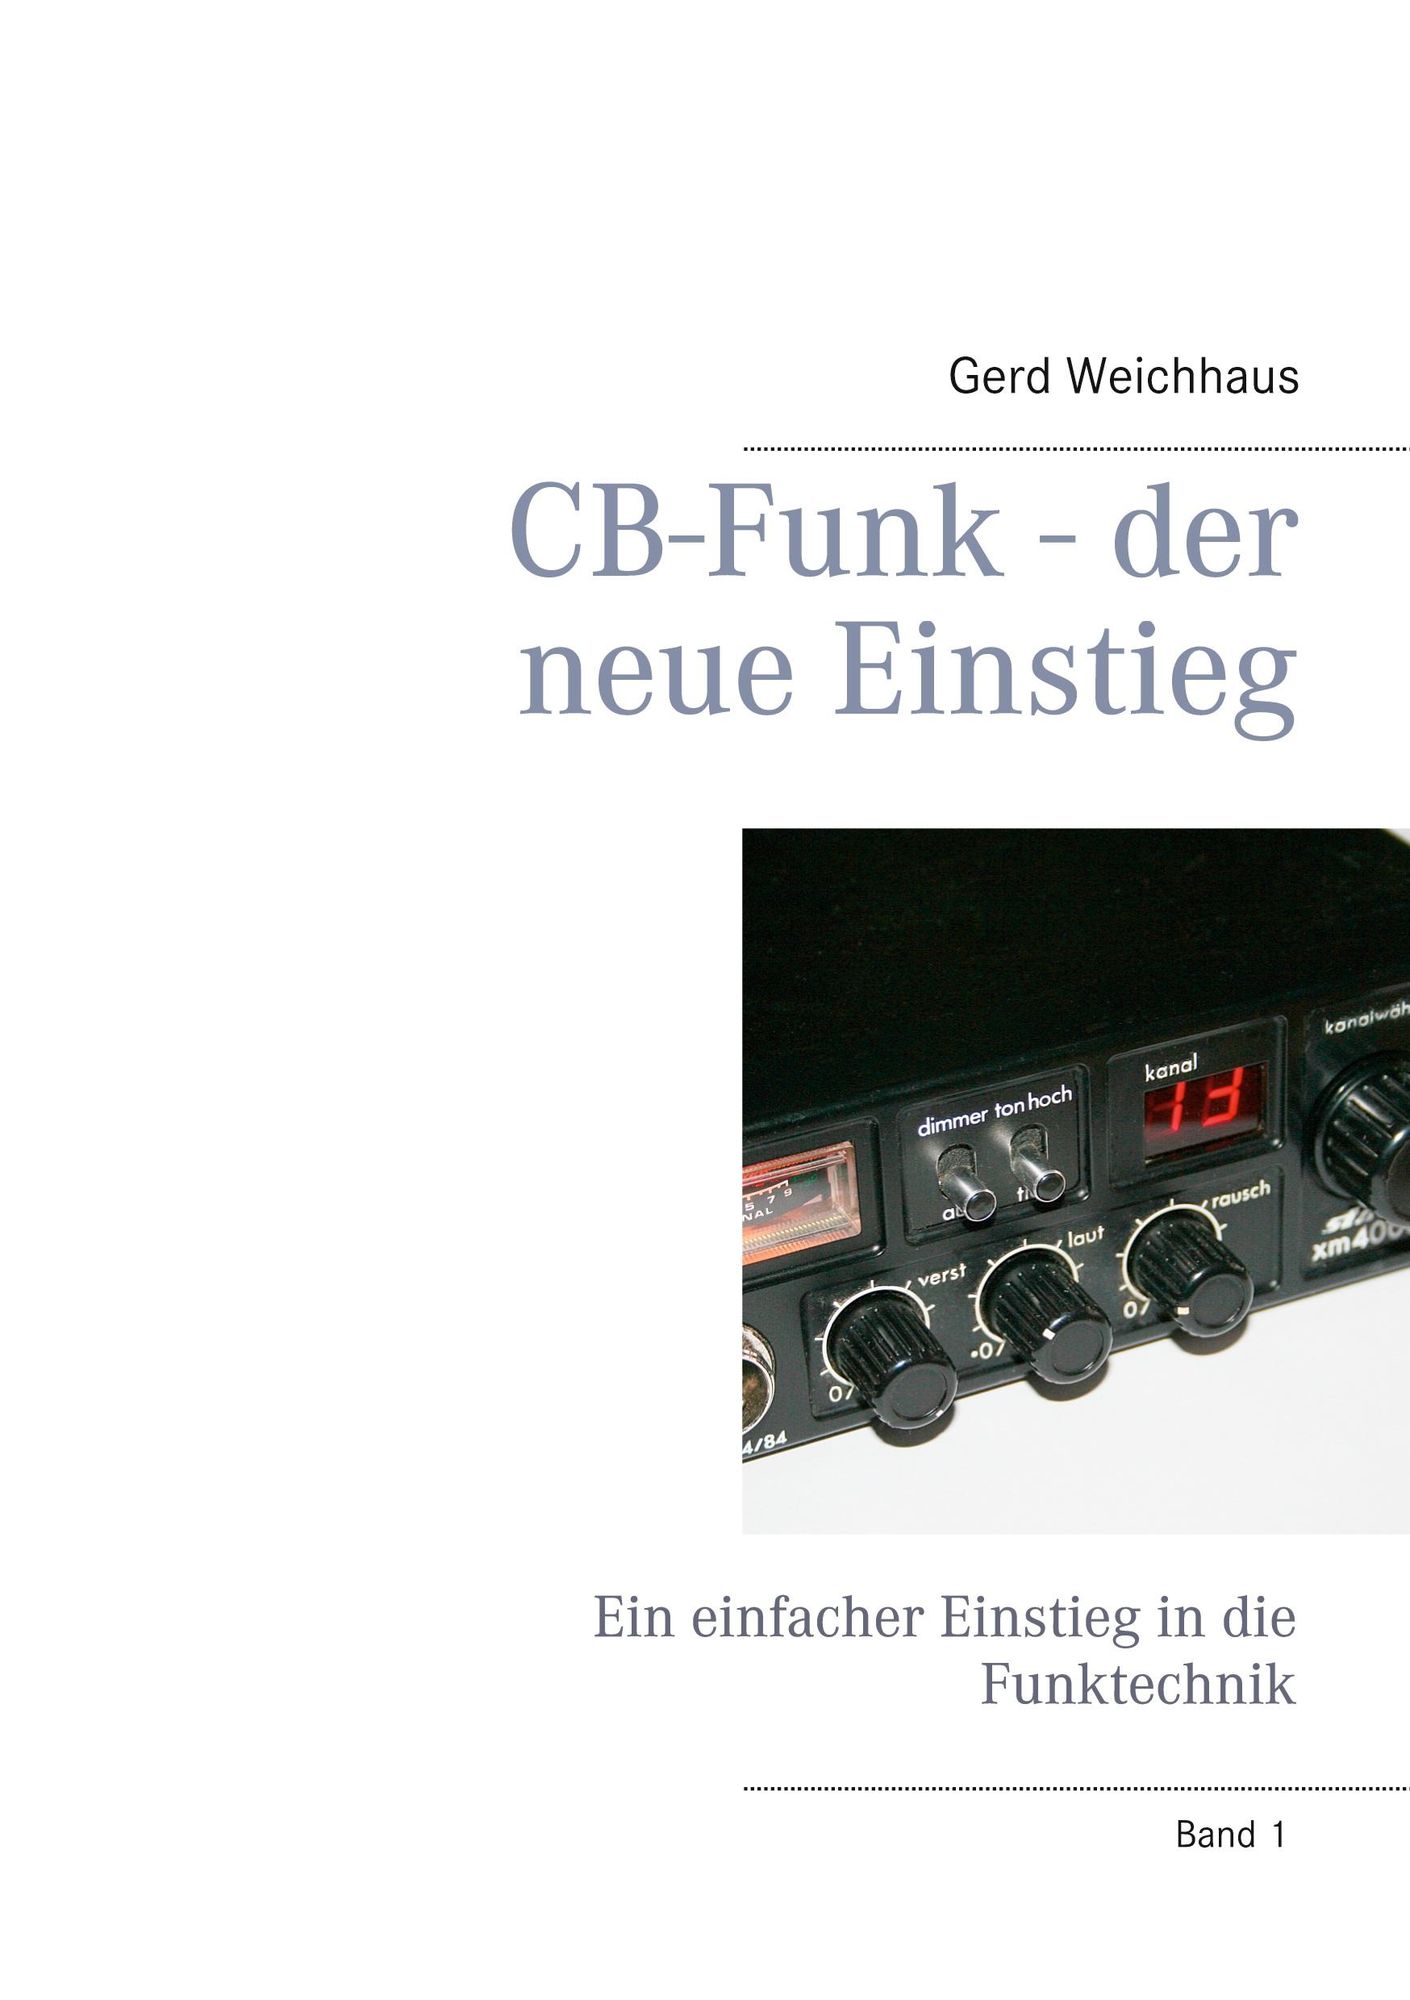 https://images.thalia.media/-/BF2000-2000/b0280d893da8484e80699cb490936c35/cb-funk-der-neue-einstieg-epub-gerd-weichhaus.jpeg